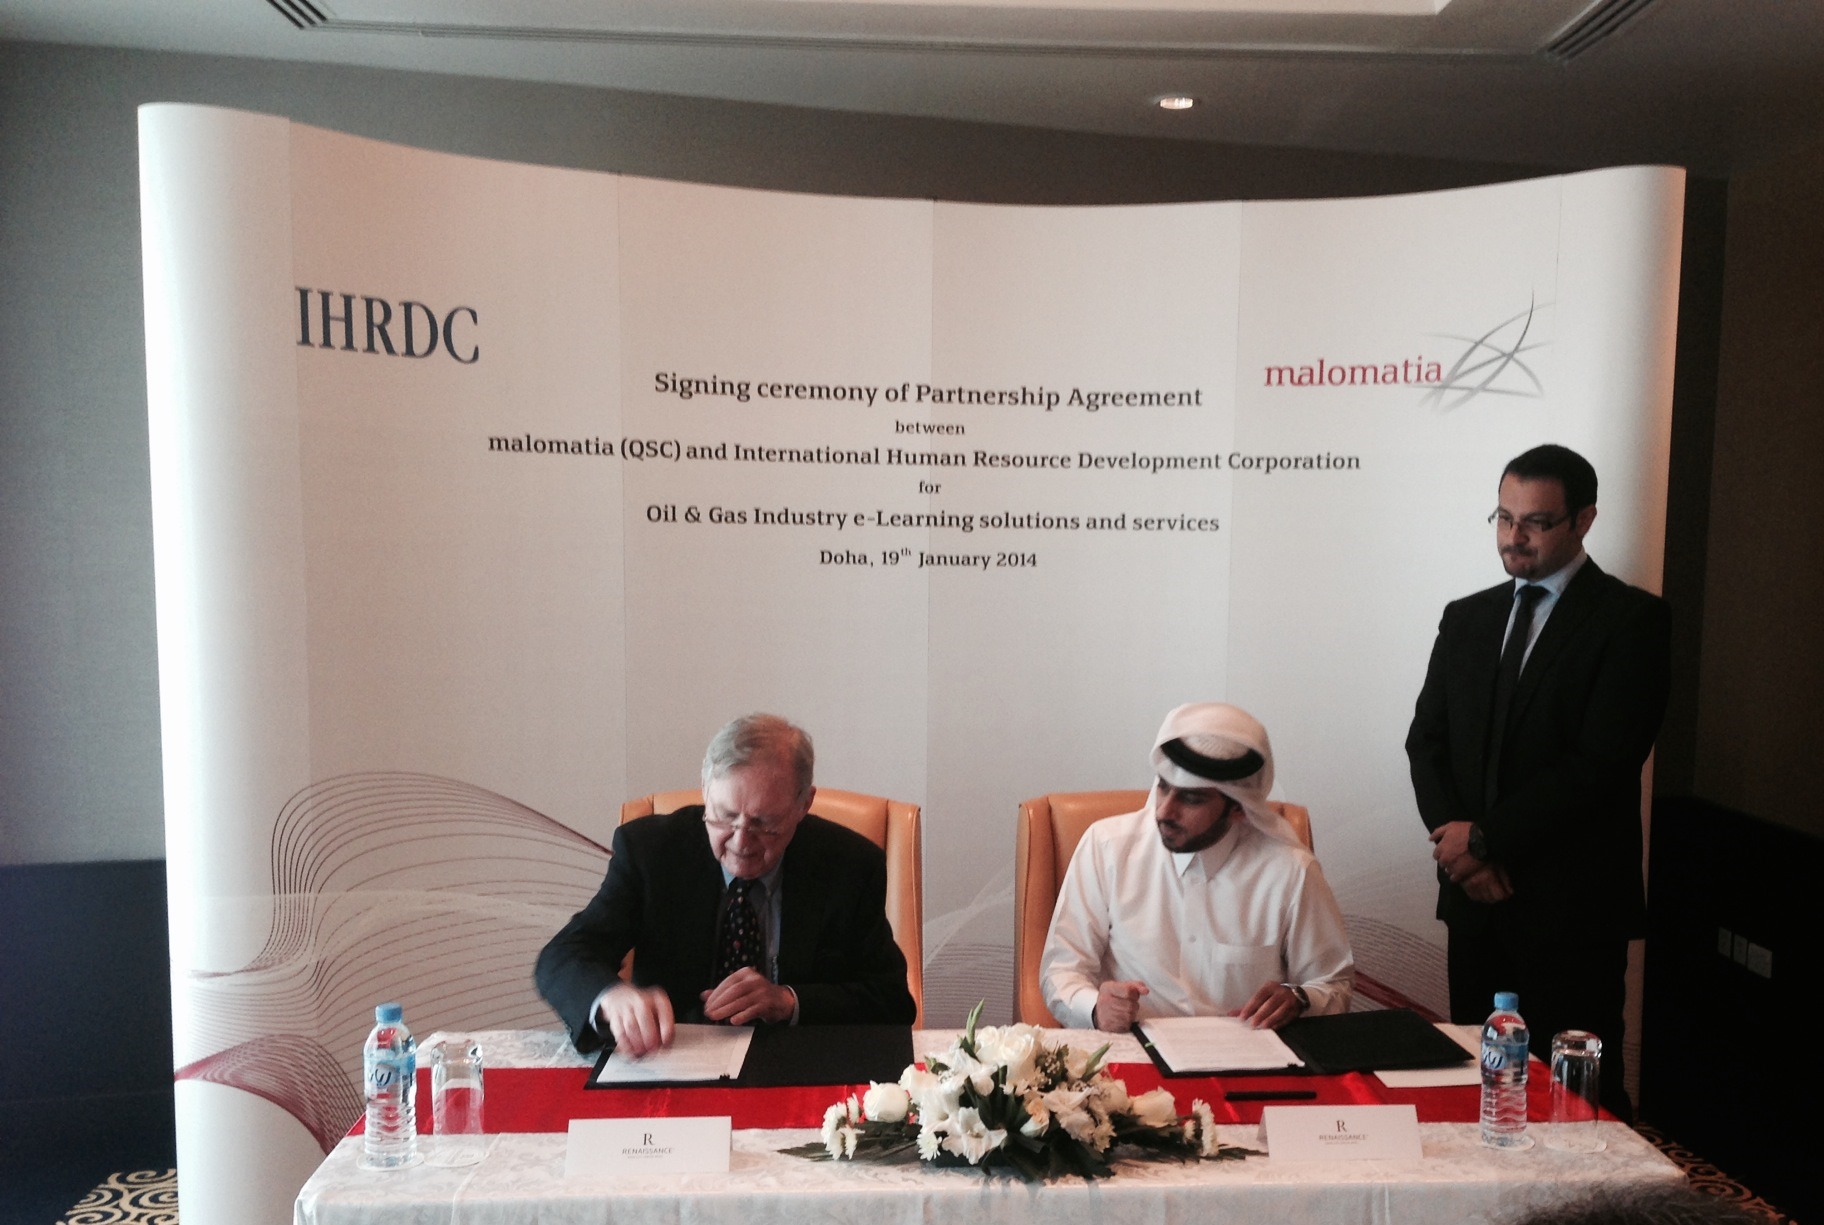 معلوماتية توقع اتفاقية شراكة مع شركة IHRDC لحلول وخدمات التدريب الالكتروني لقطاعي البترول والغاز